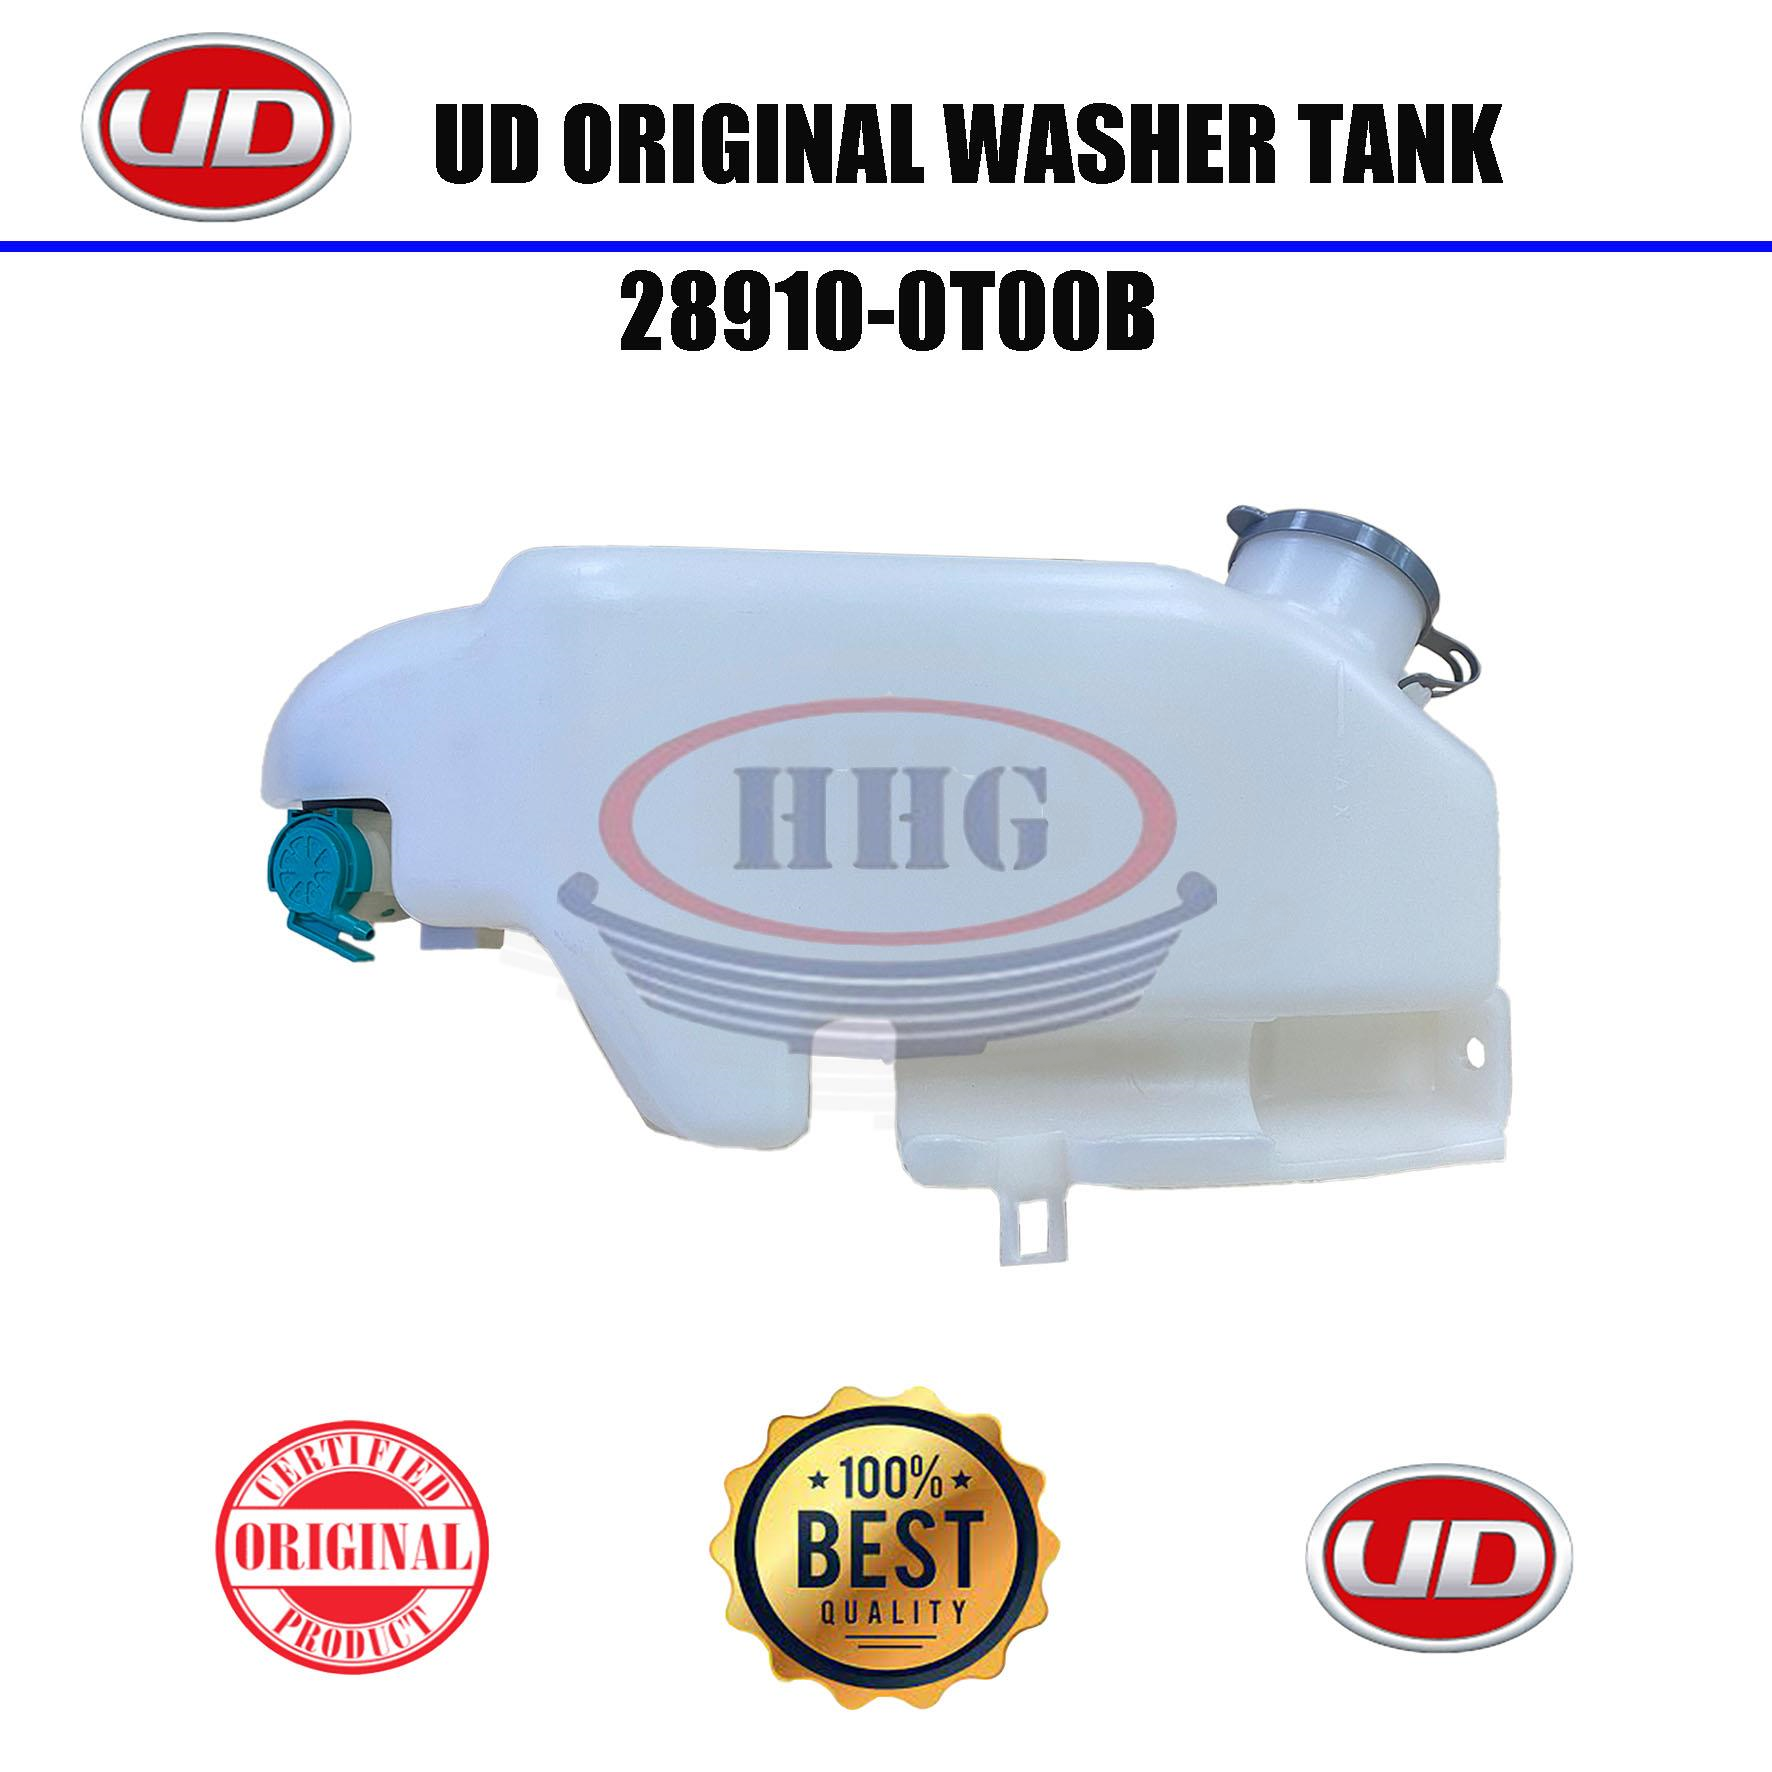 UD Original YU41 NU41 24V Washer Tank (28910-0T00B)